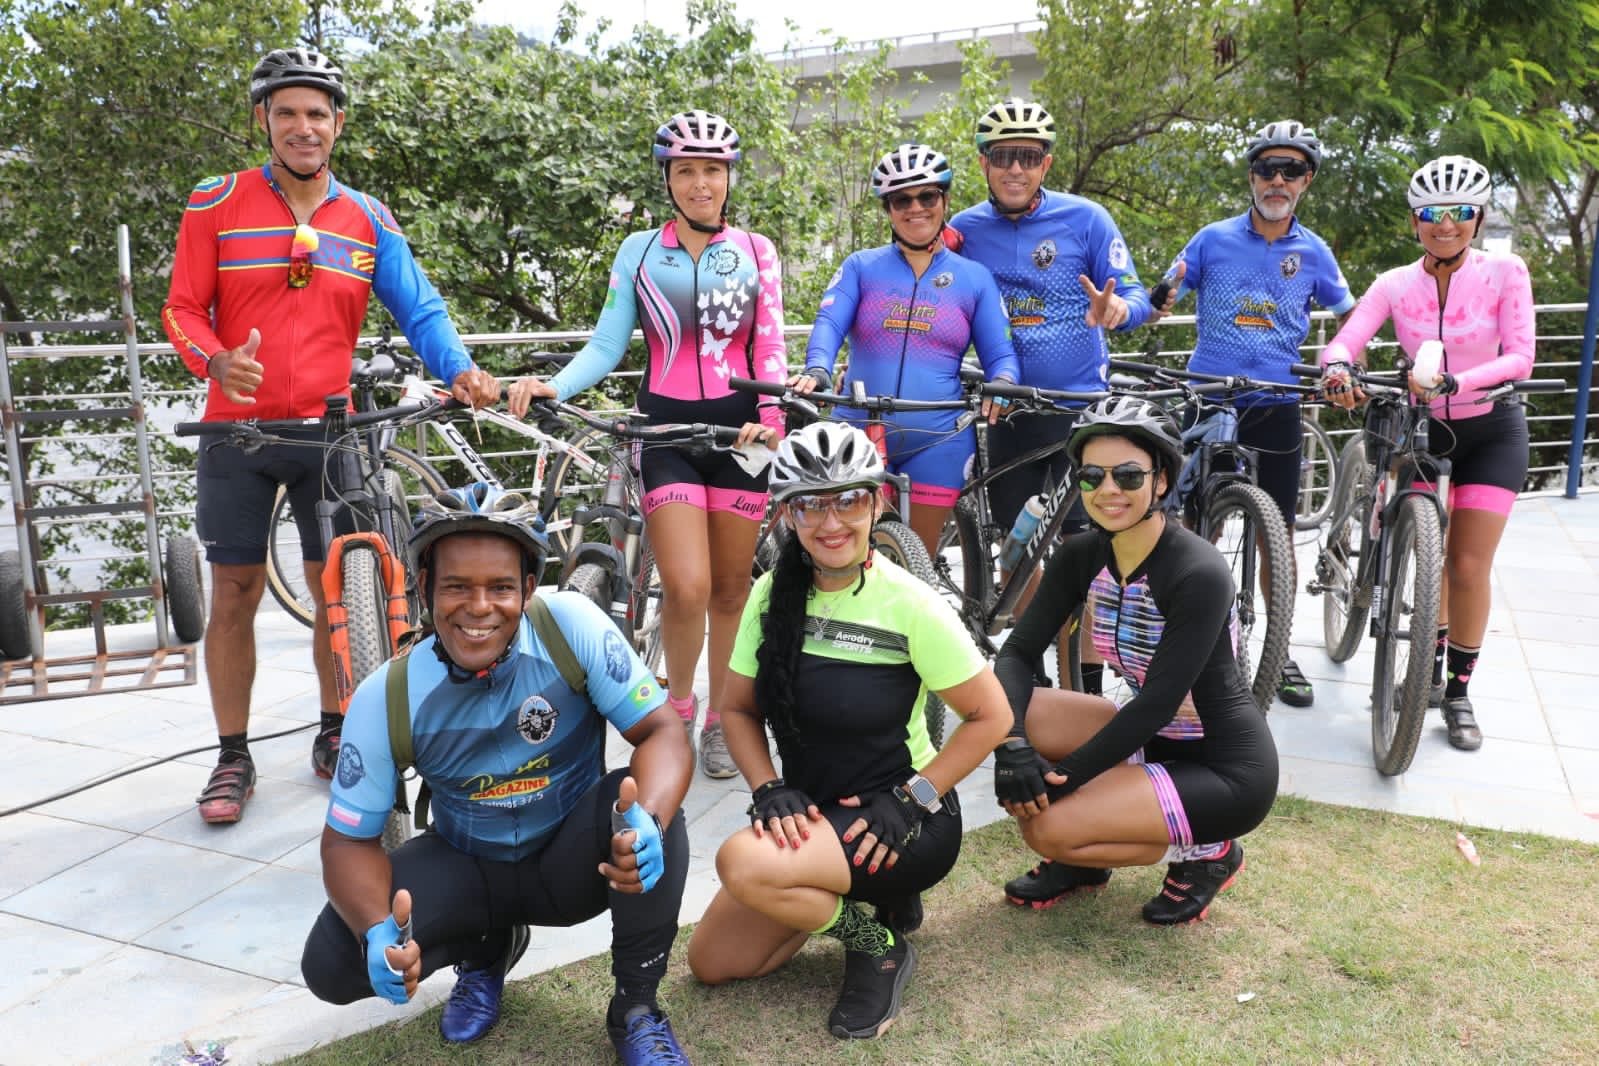 Nova Orla de Cariacica encanta ciclistas e proporciona diversão às crianças na Rua de Lazer